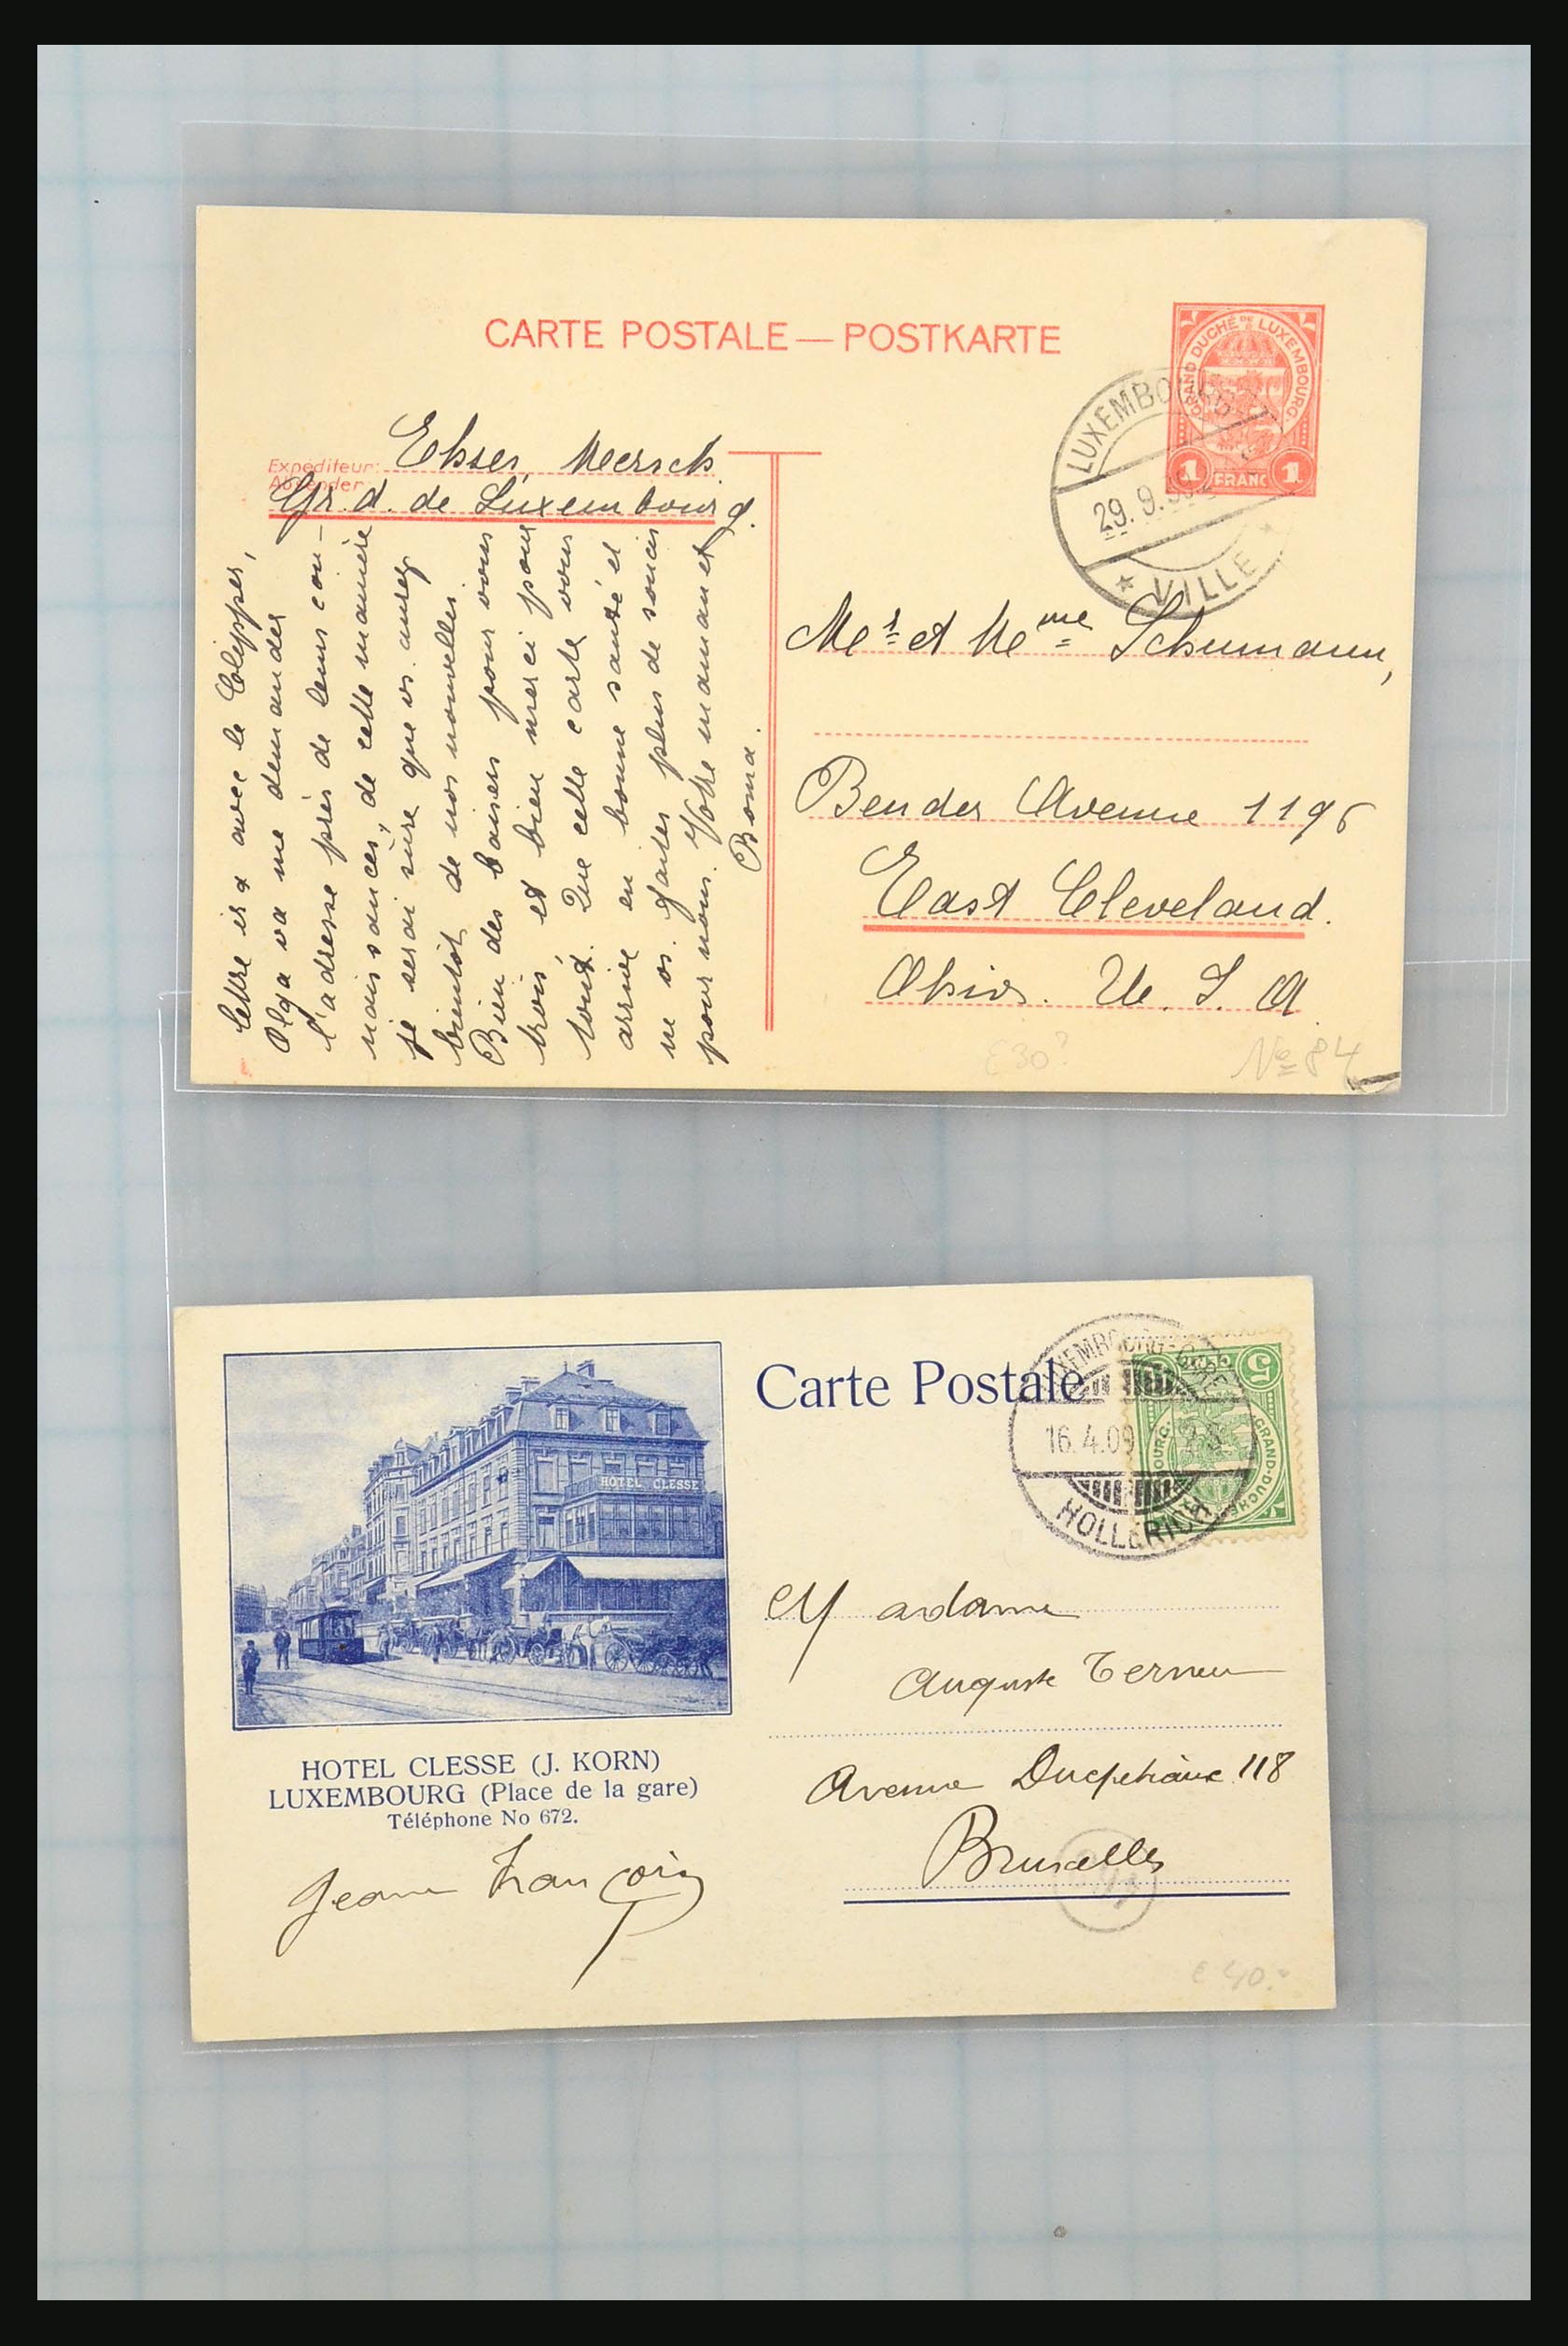 31358 040 - 31358 Portugal/Luxemburg/Griekenland brieven 1880-1960.